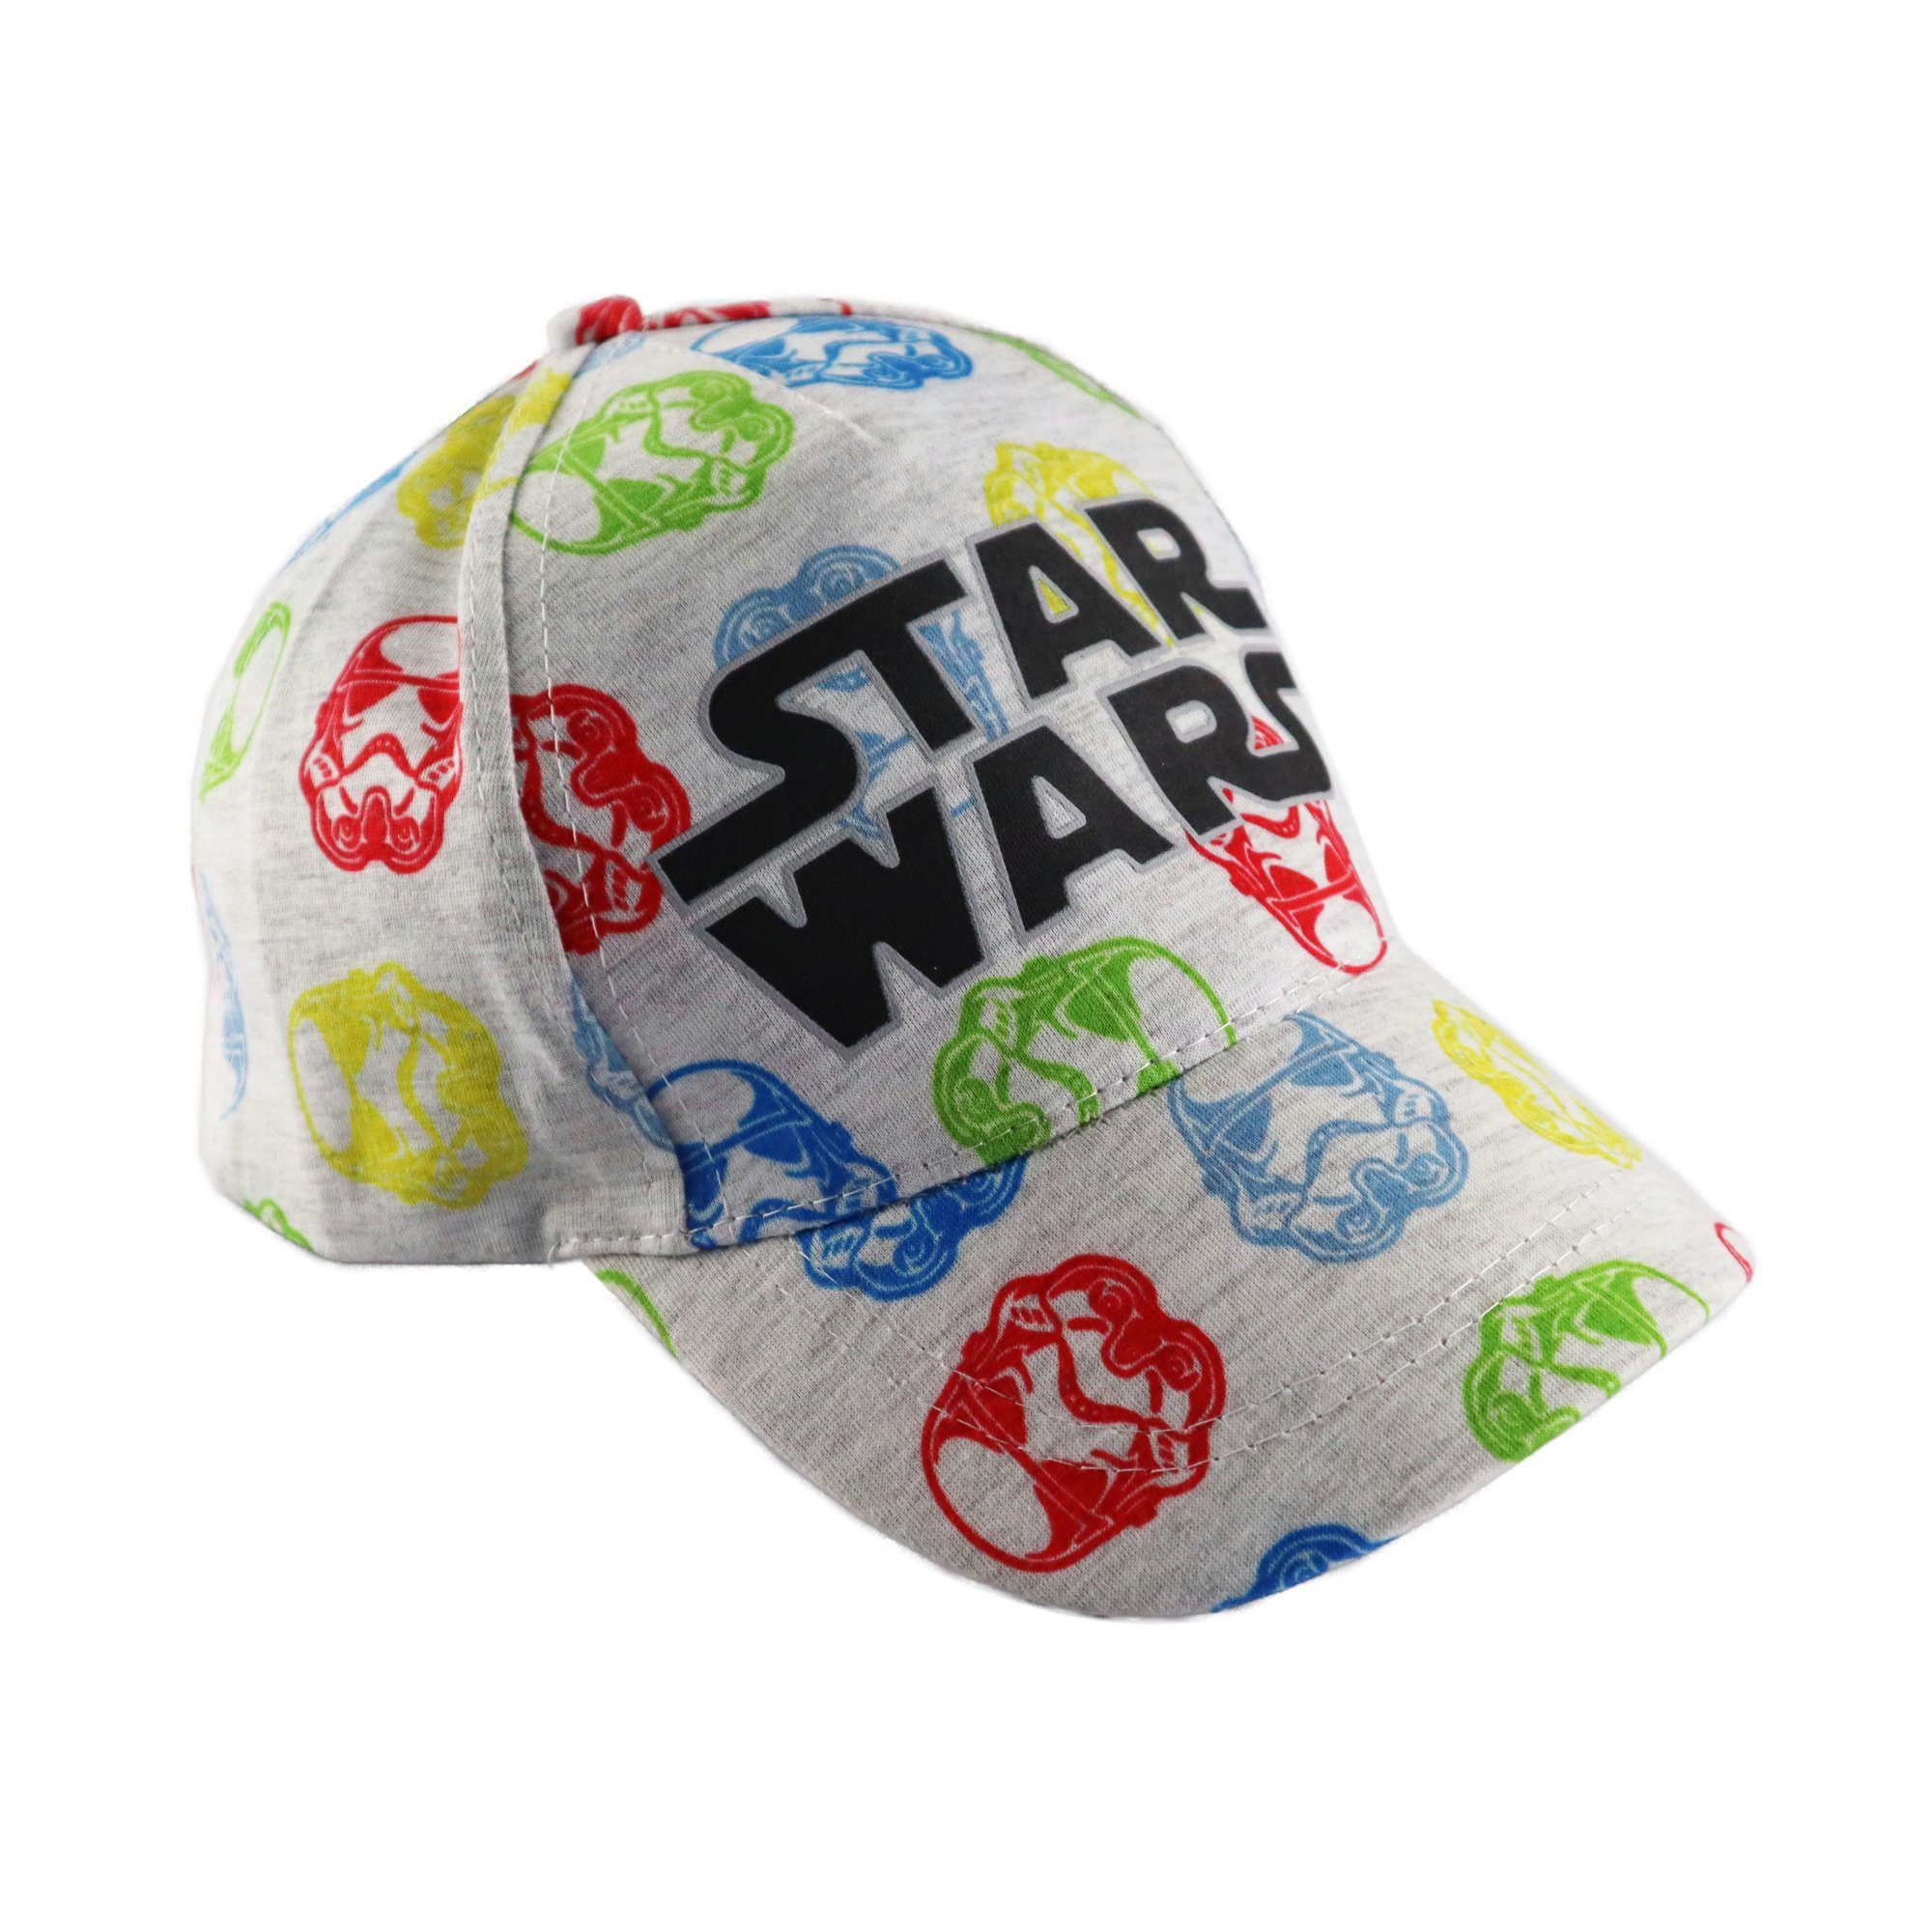 Star Wars Baseball Cap Disney 54 Wars Star Basecap Kappe bis Kinder Baseball - Gr. Storm Trooper 52